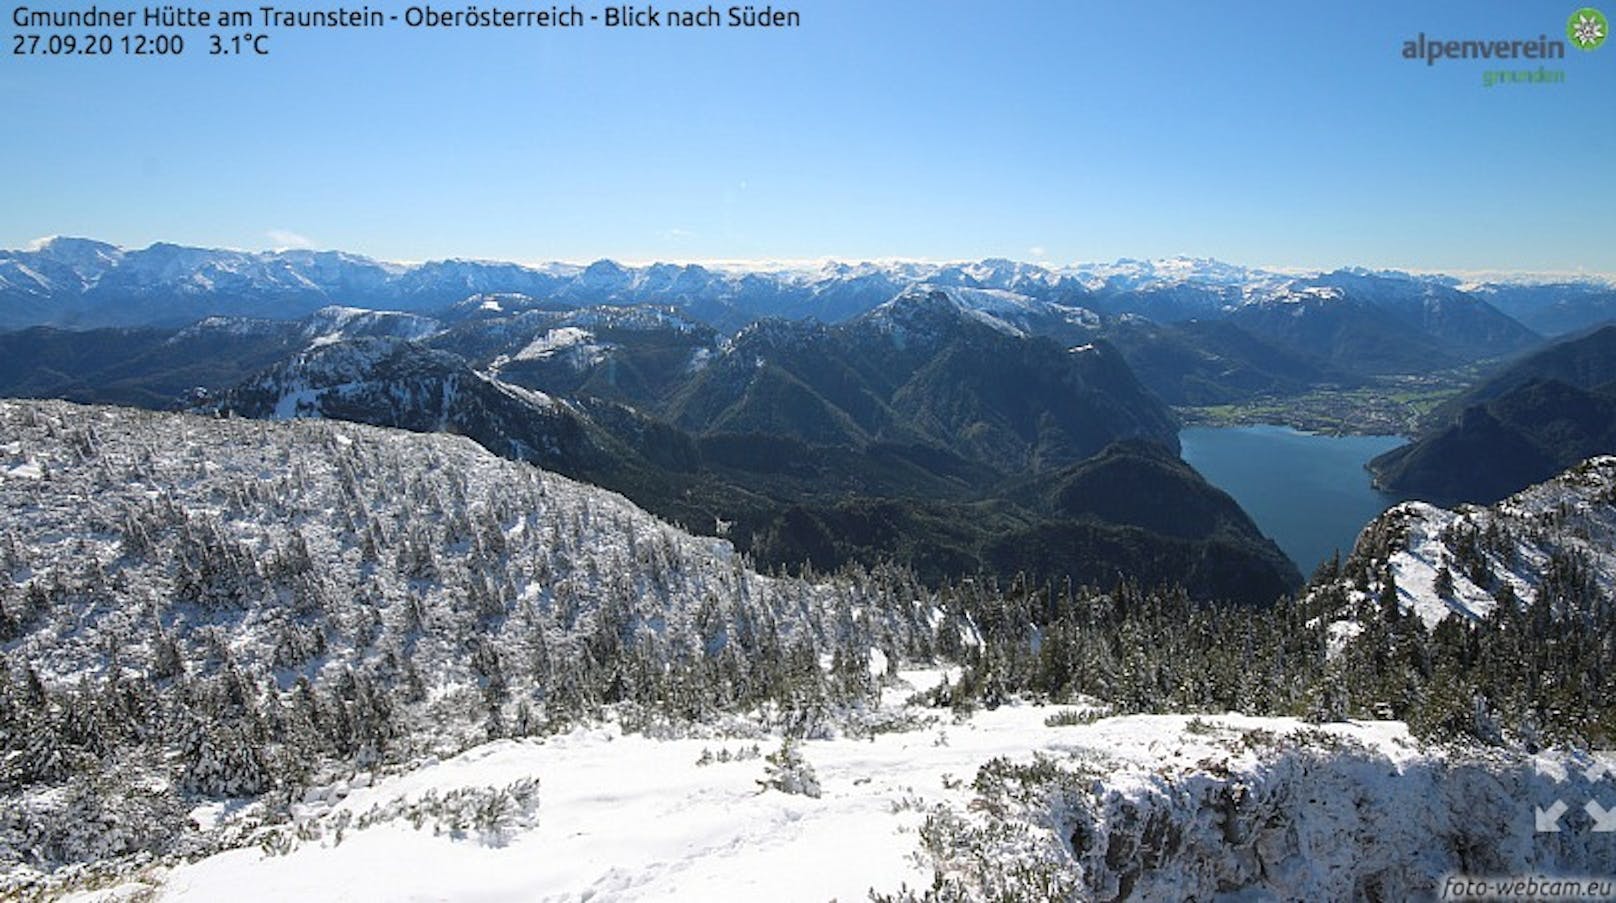 Der Blick von der Gmundnerhütte am Traunstein.